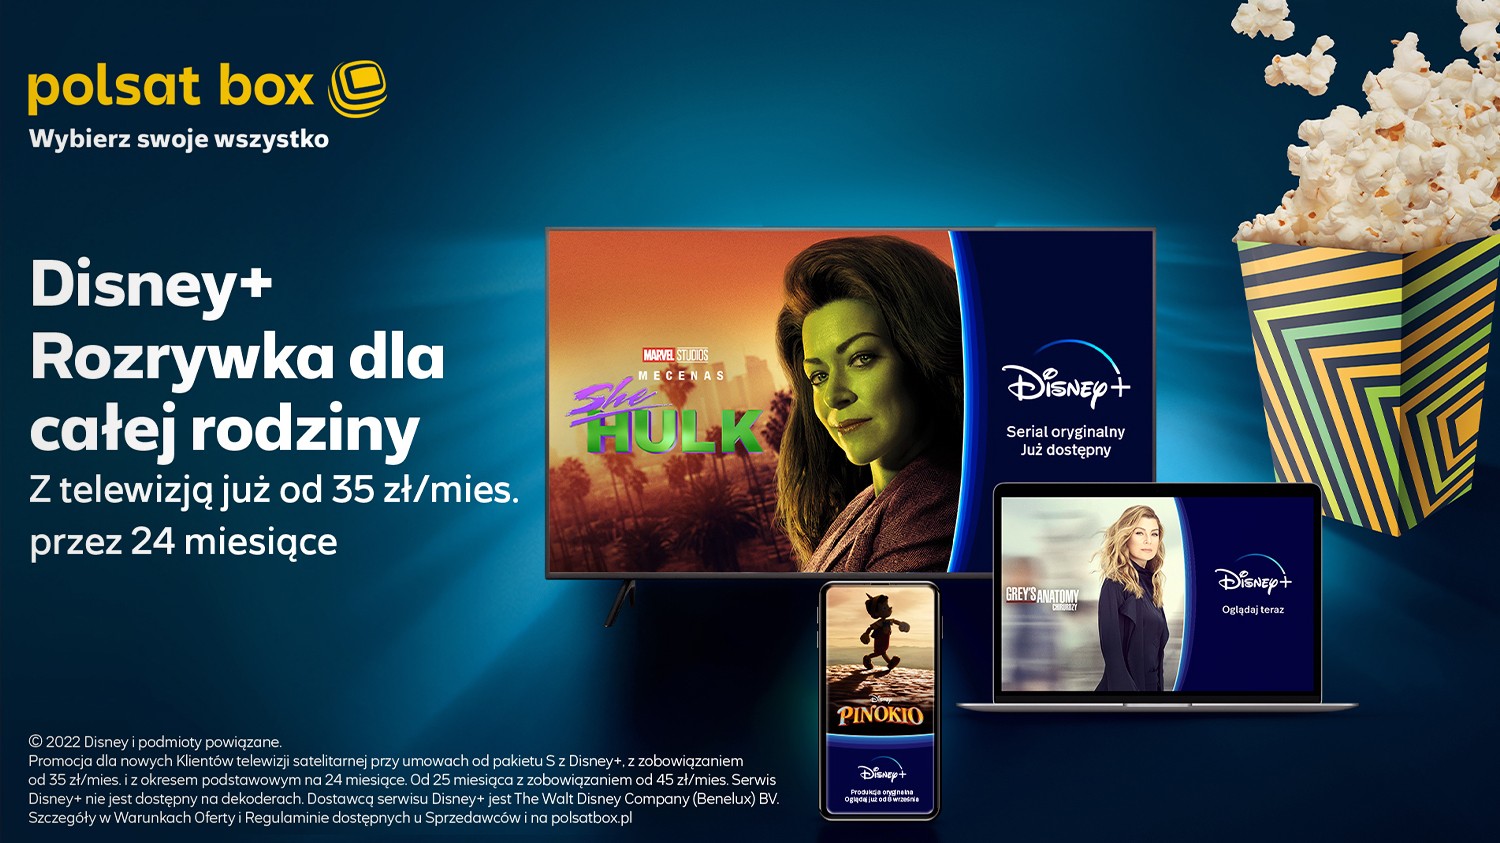 Oferta Polsat Box z Disney+. Nowa kampania promocyjna